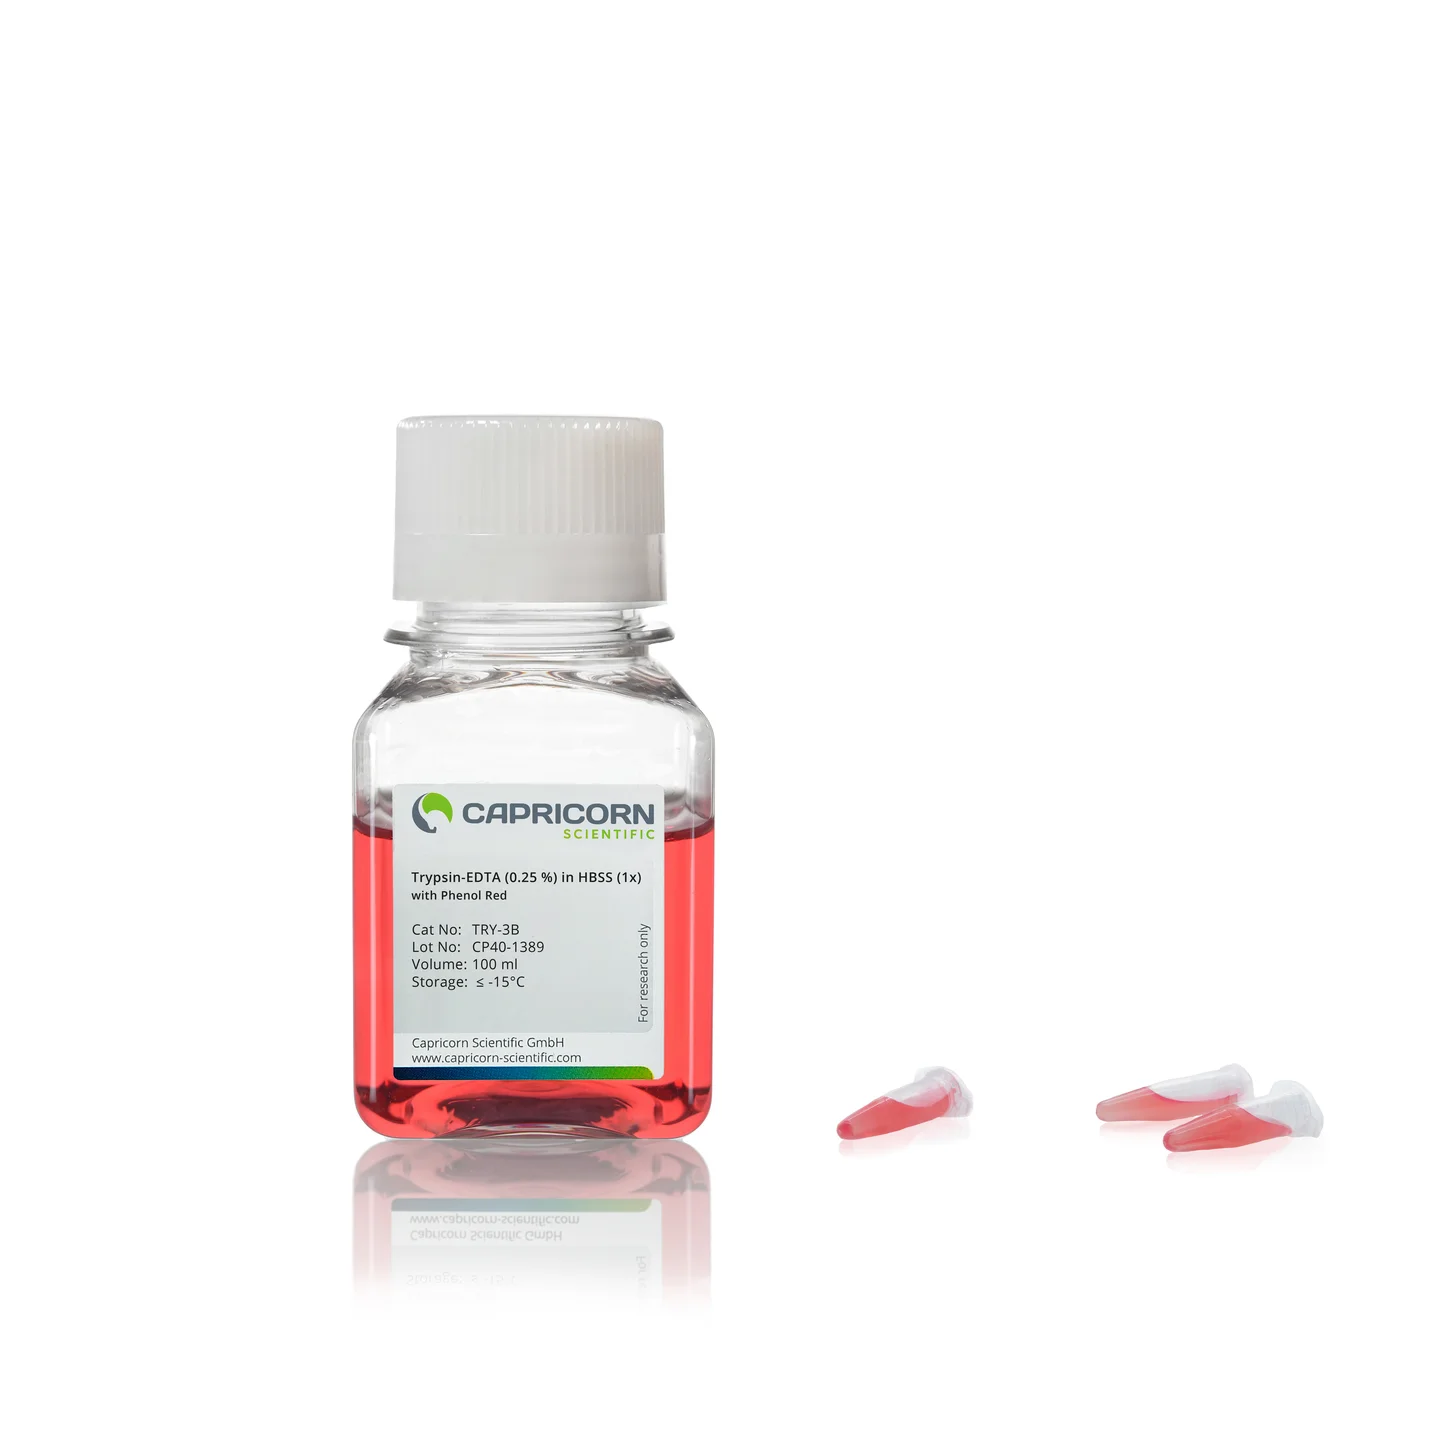 Trypsin-EDTA (0.25%) trong HBSS (1x), có chứa Phenol đỏ